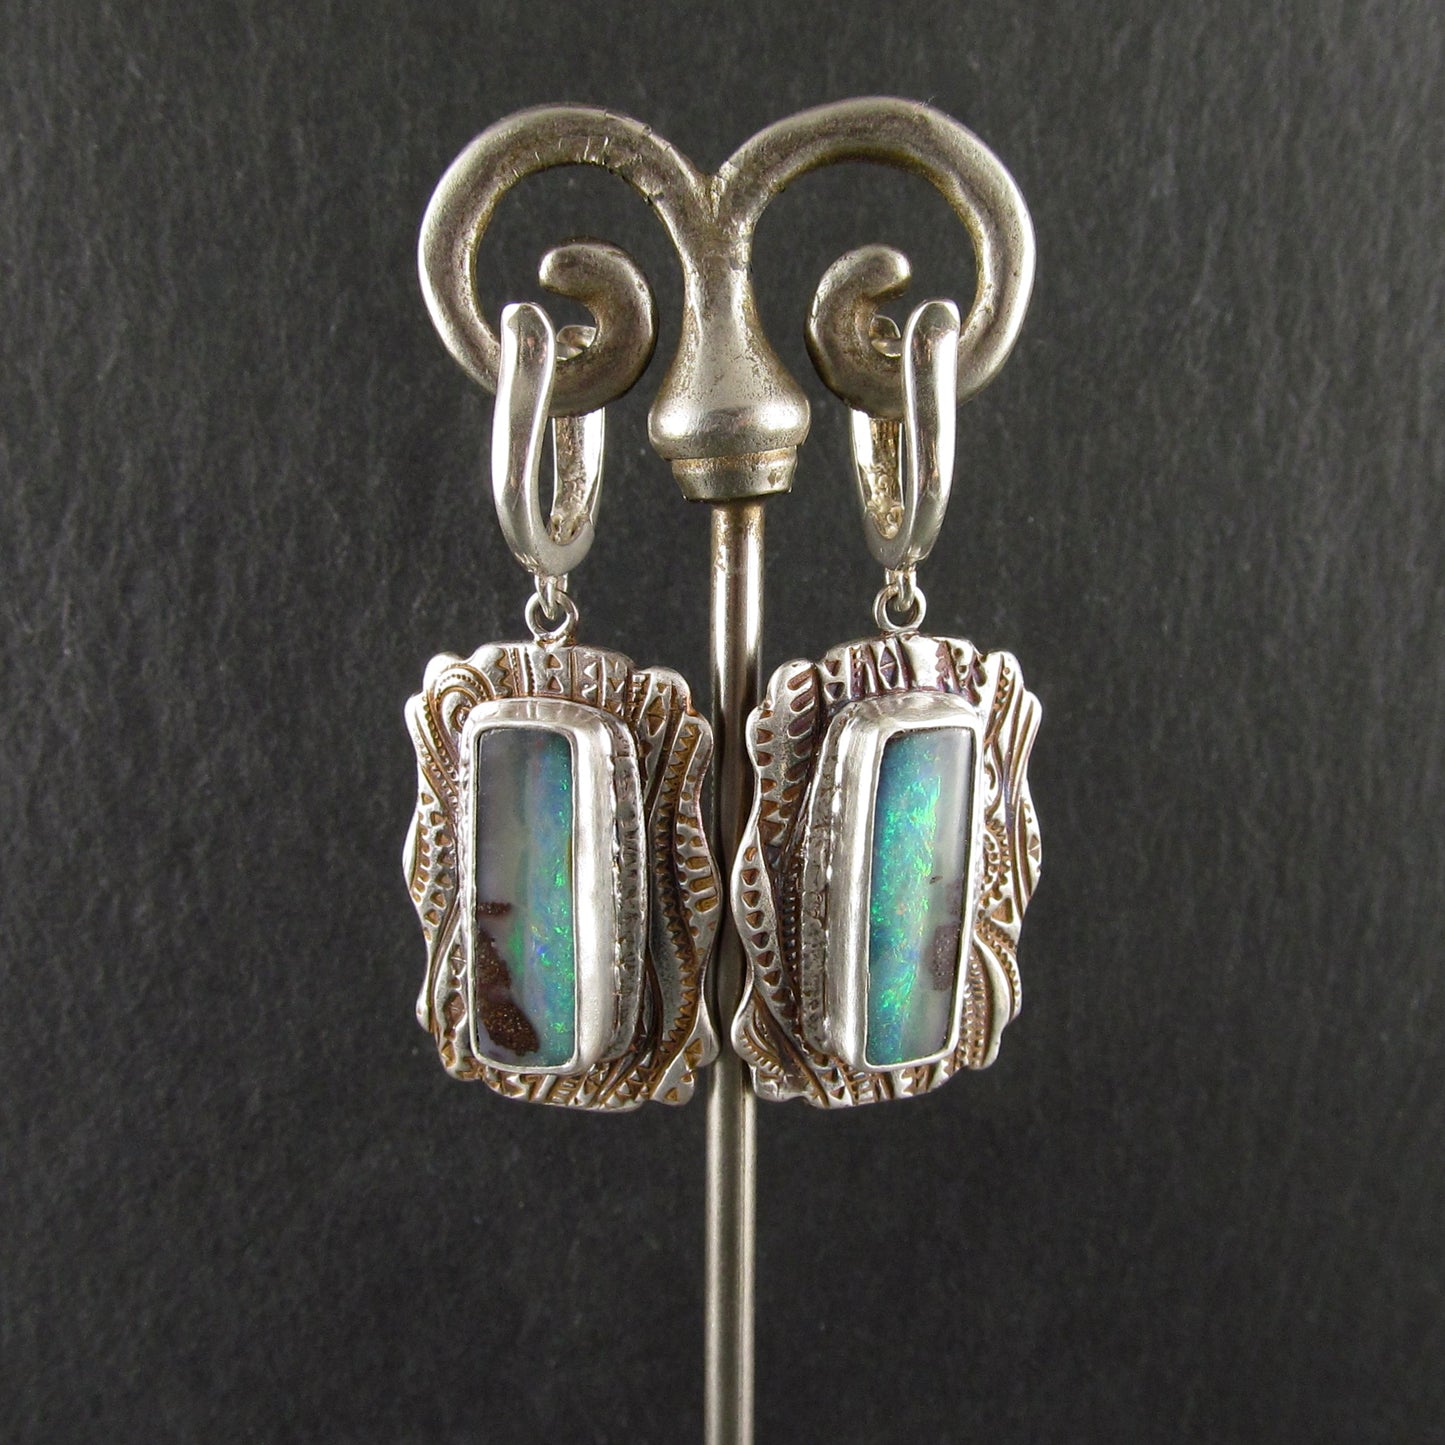 Australian opal earrings, handmade recycled fine silver earrings